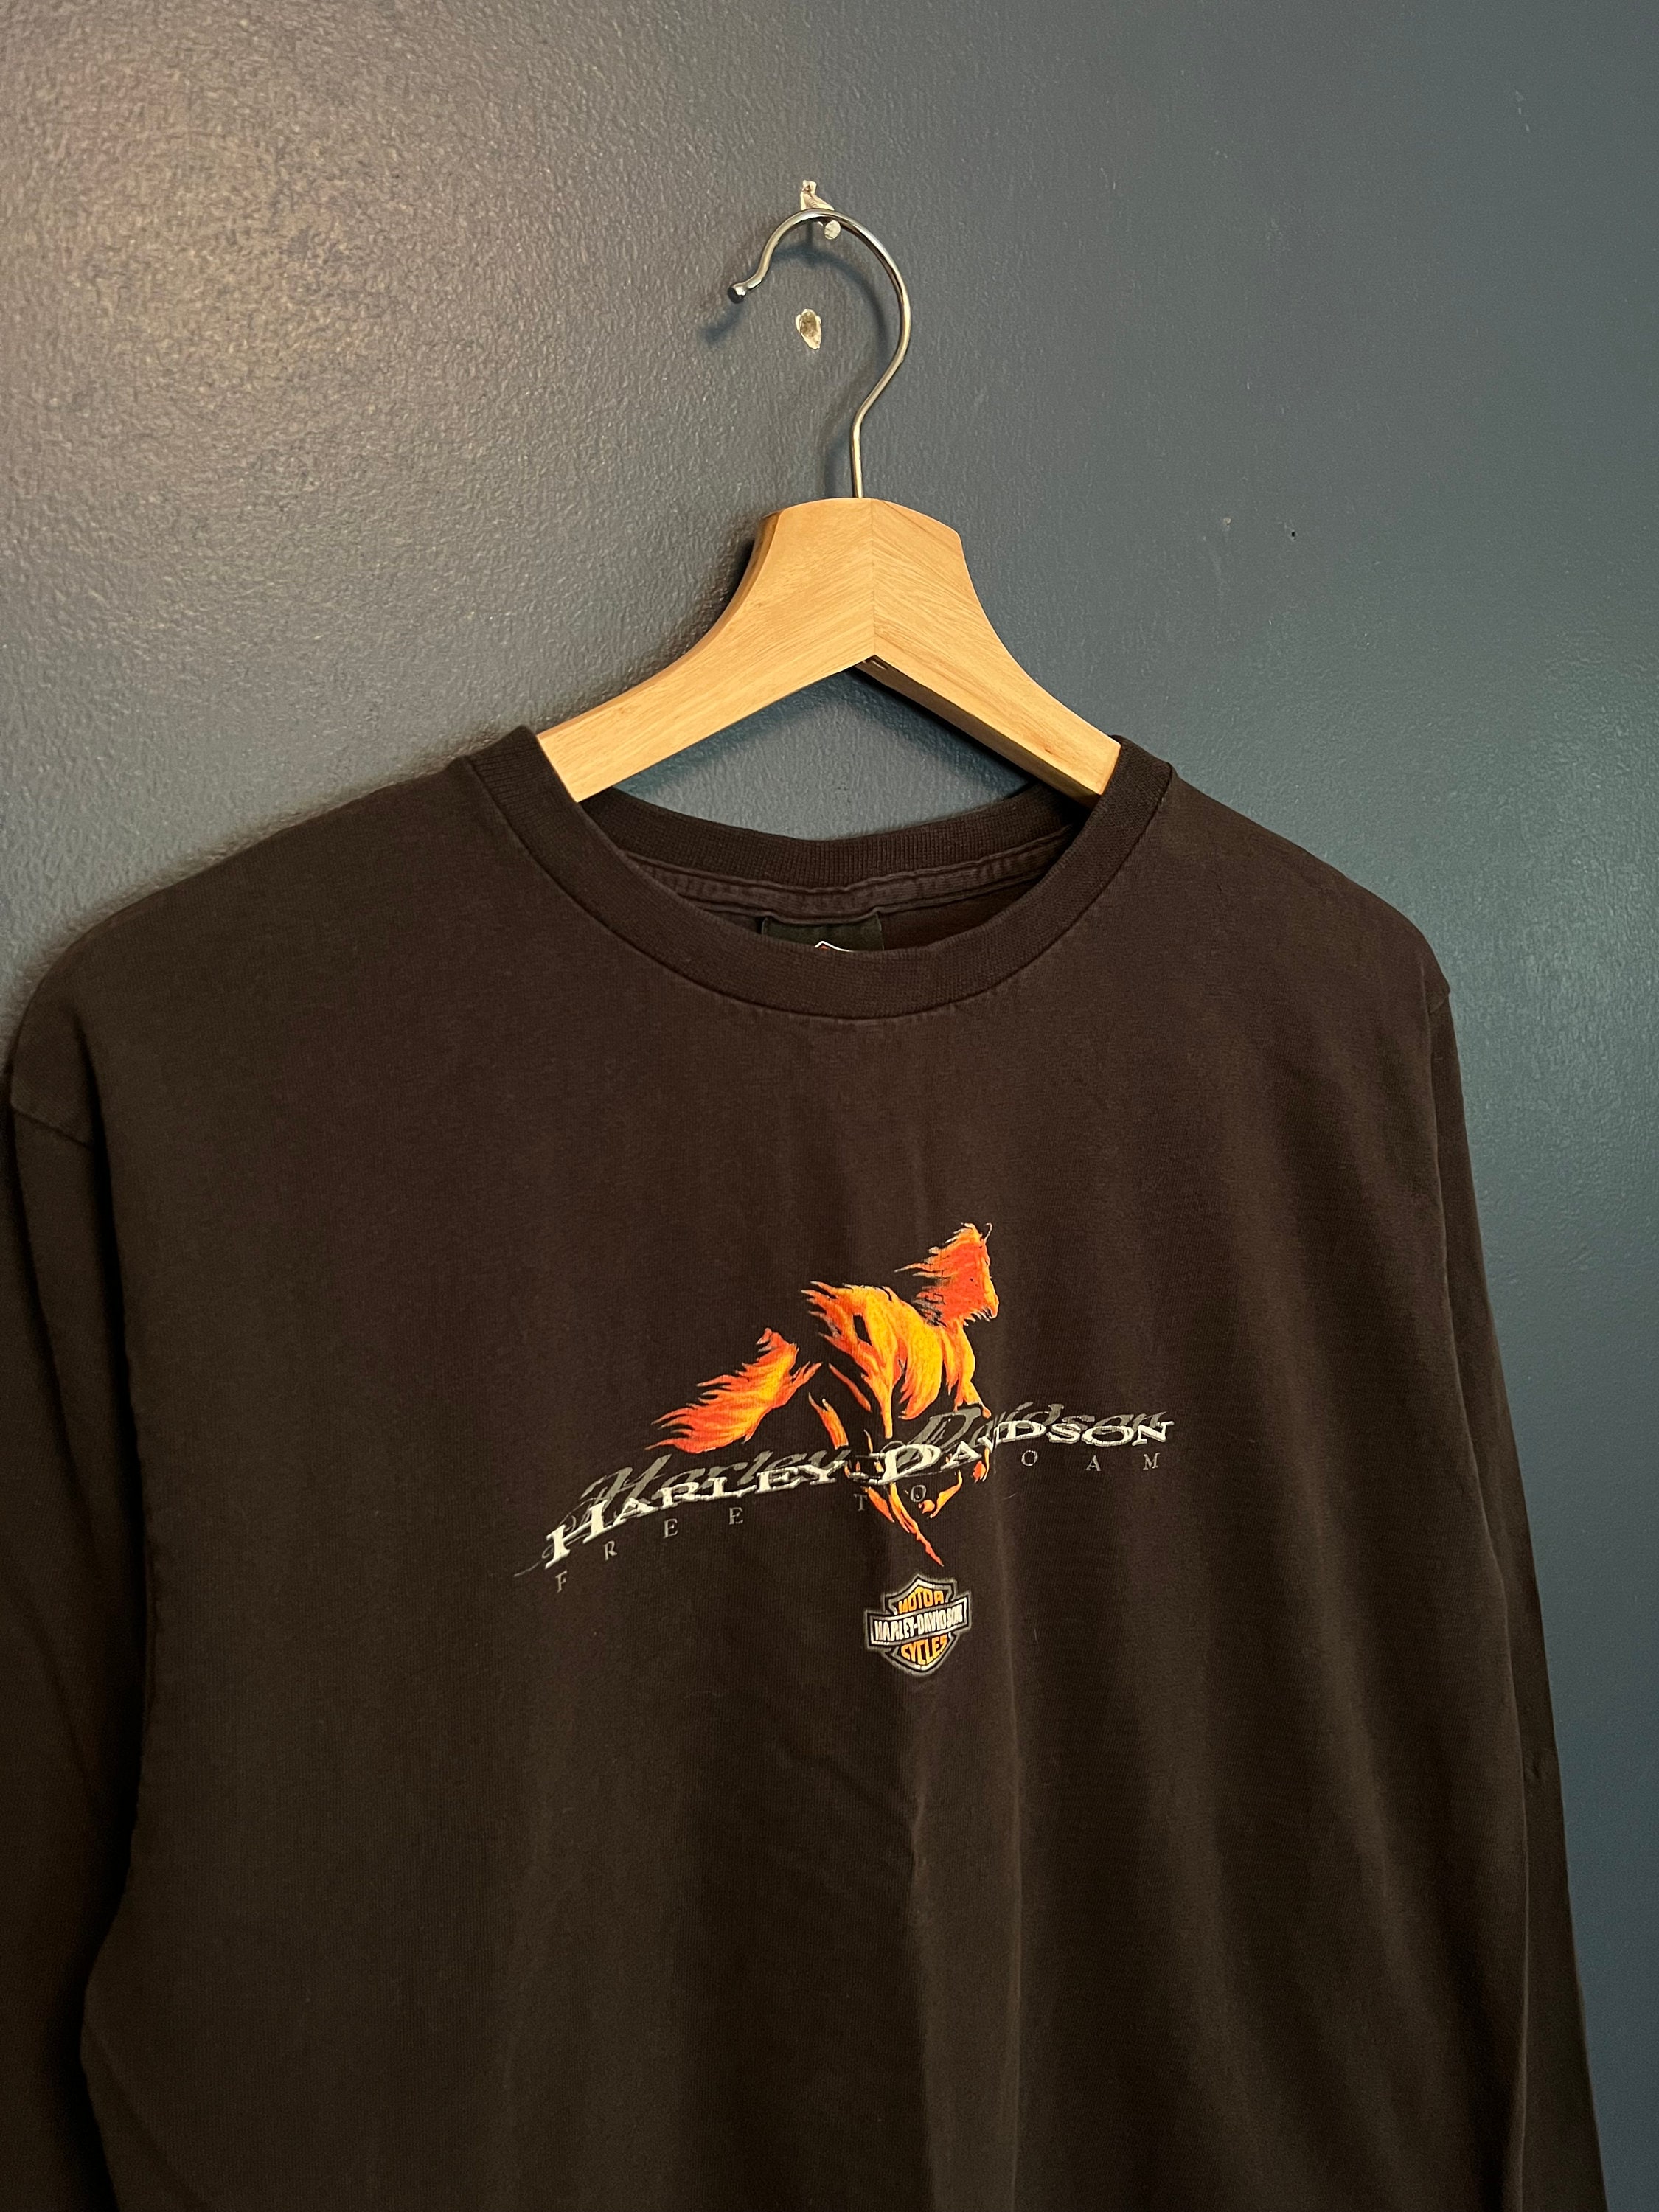 Vintage 90s IS Interstate Denim Flames Logo Jersey Shirt Skate Y2K Rave Men  Tank